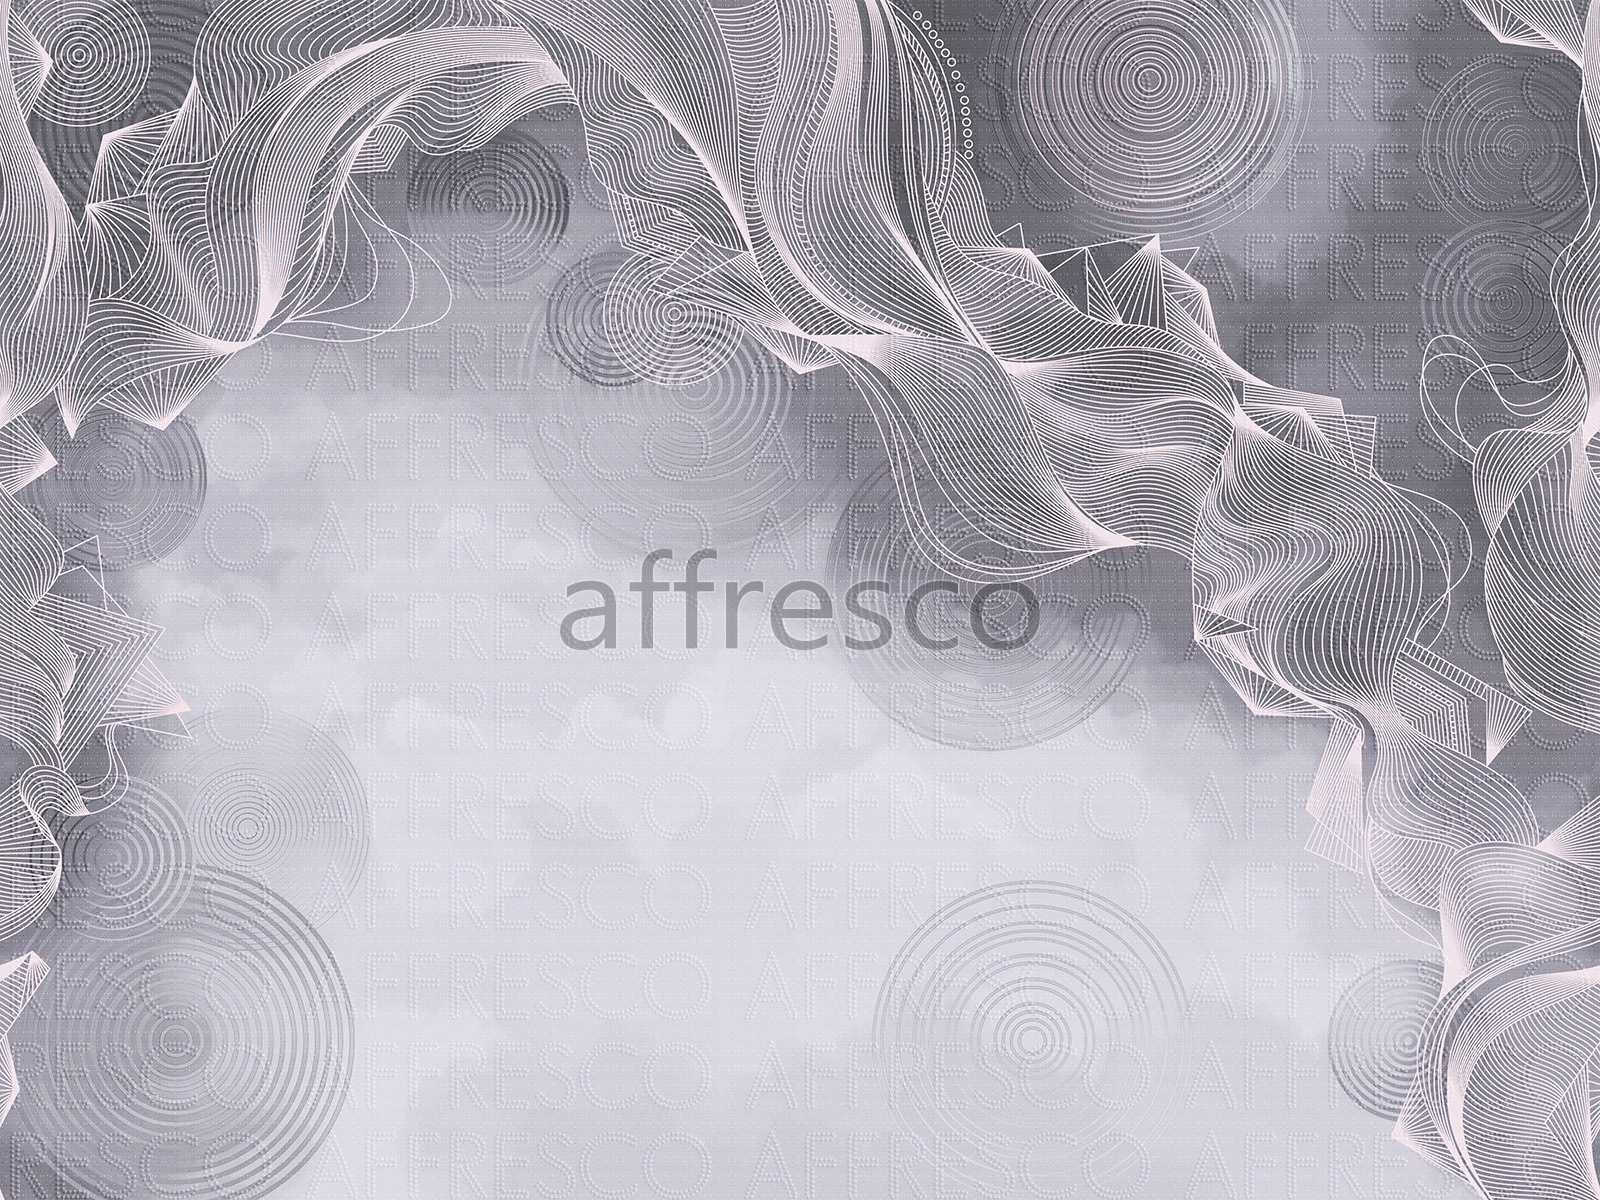 AF2134-COL5 | Line Art | Affresco Factory